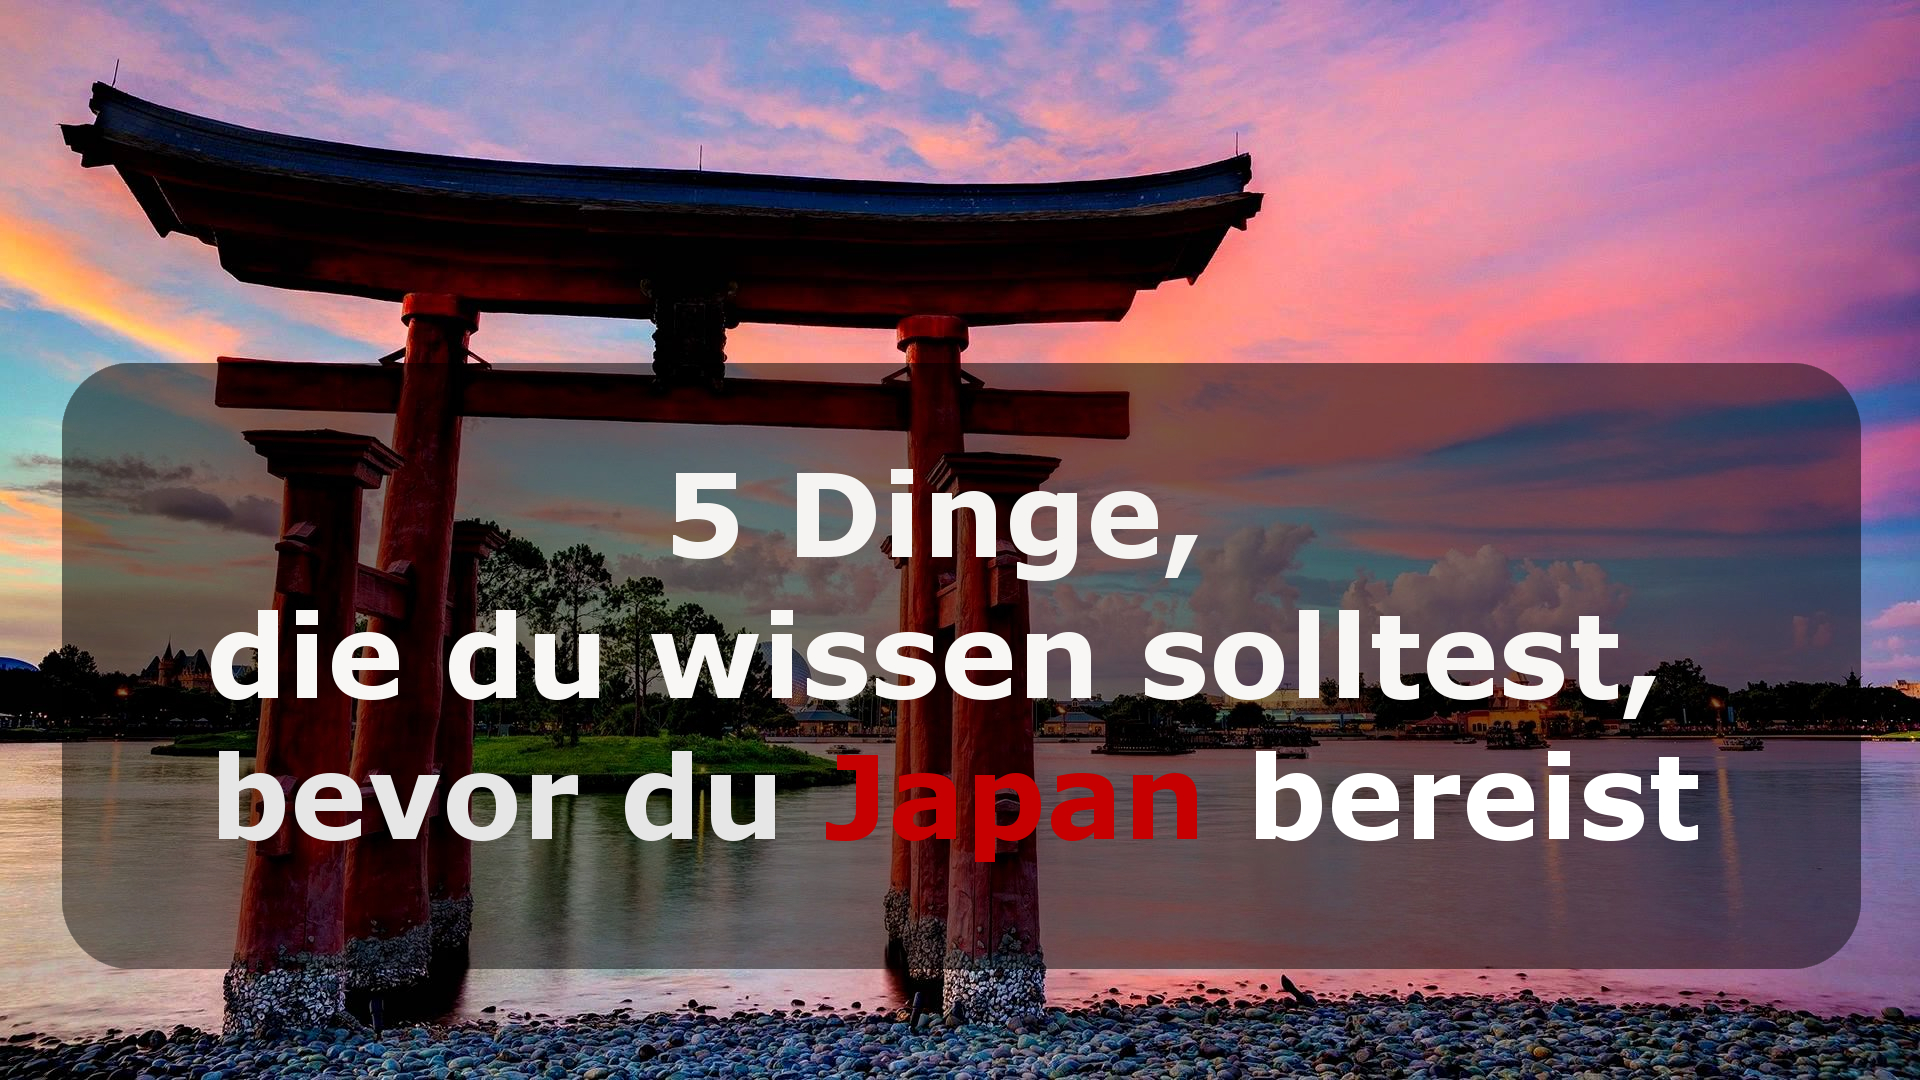 Japan Travel Tipps – 5 Dinge, die du wissen solltest, bevor du Japan bereist